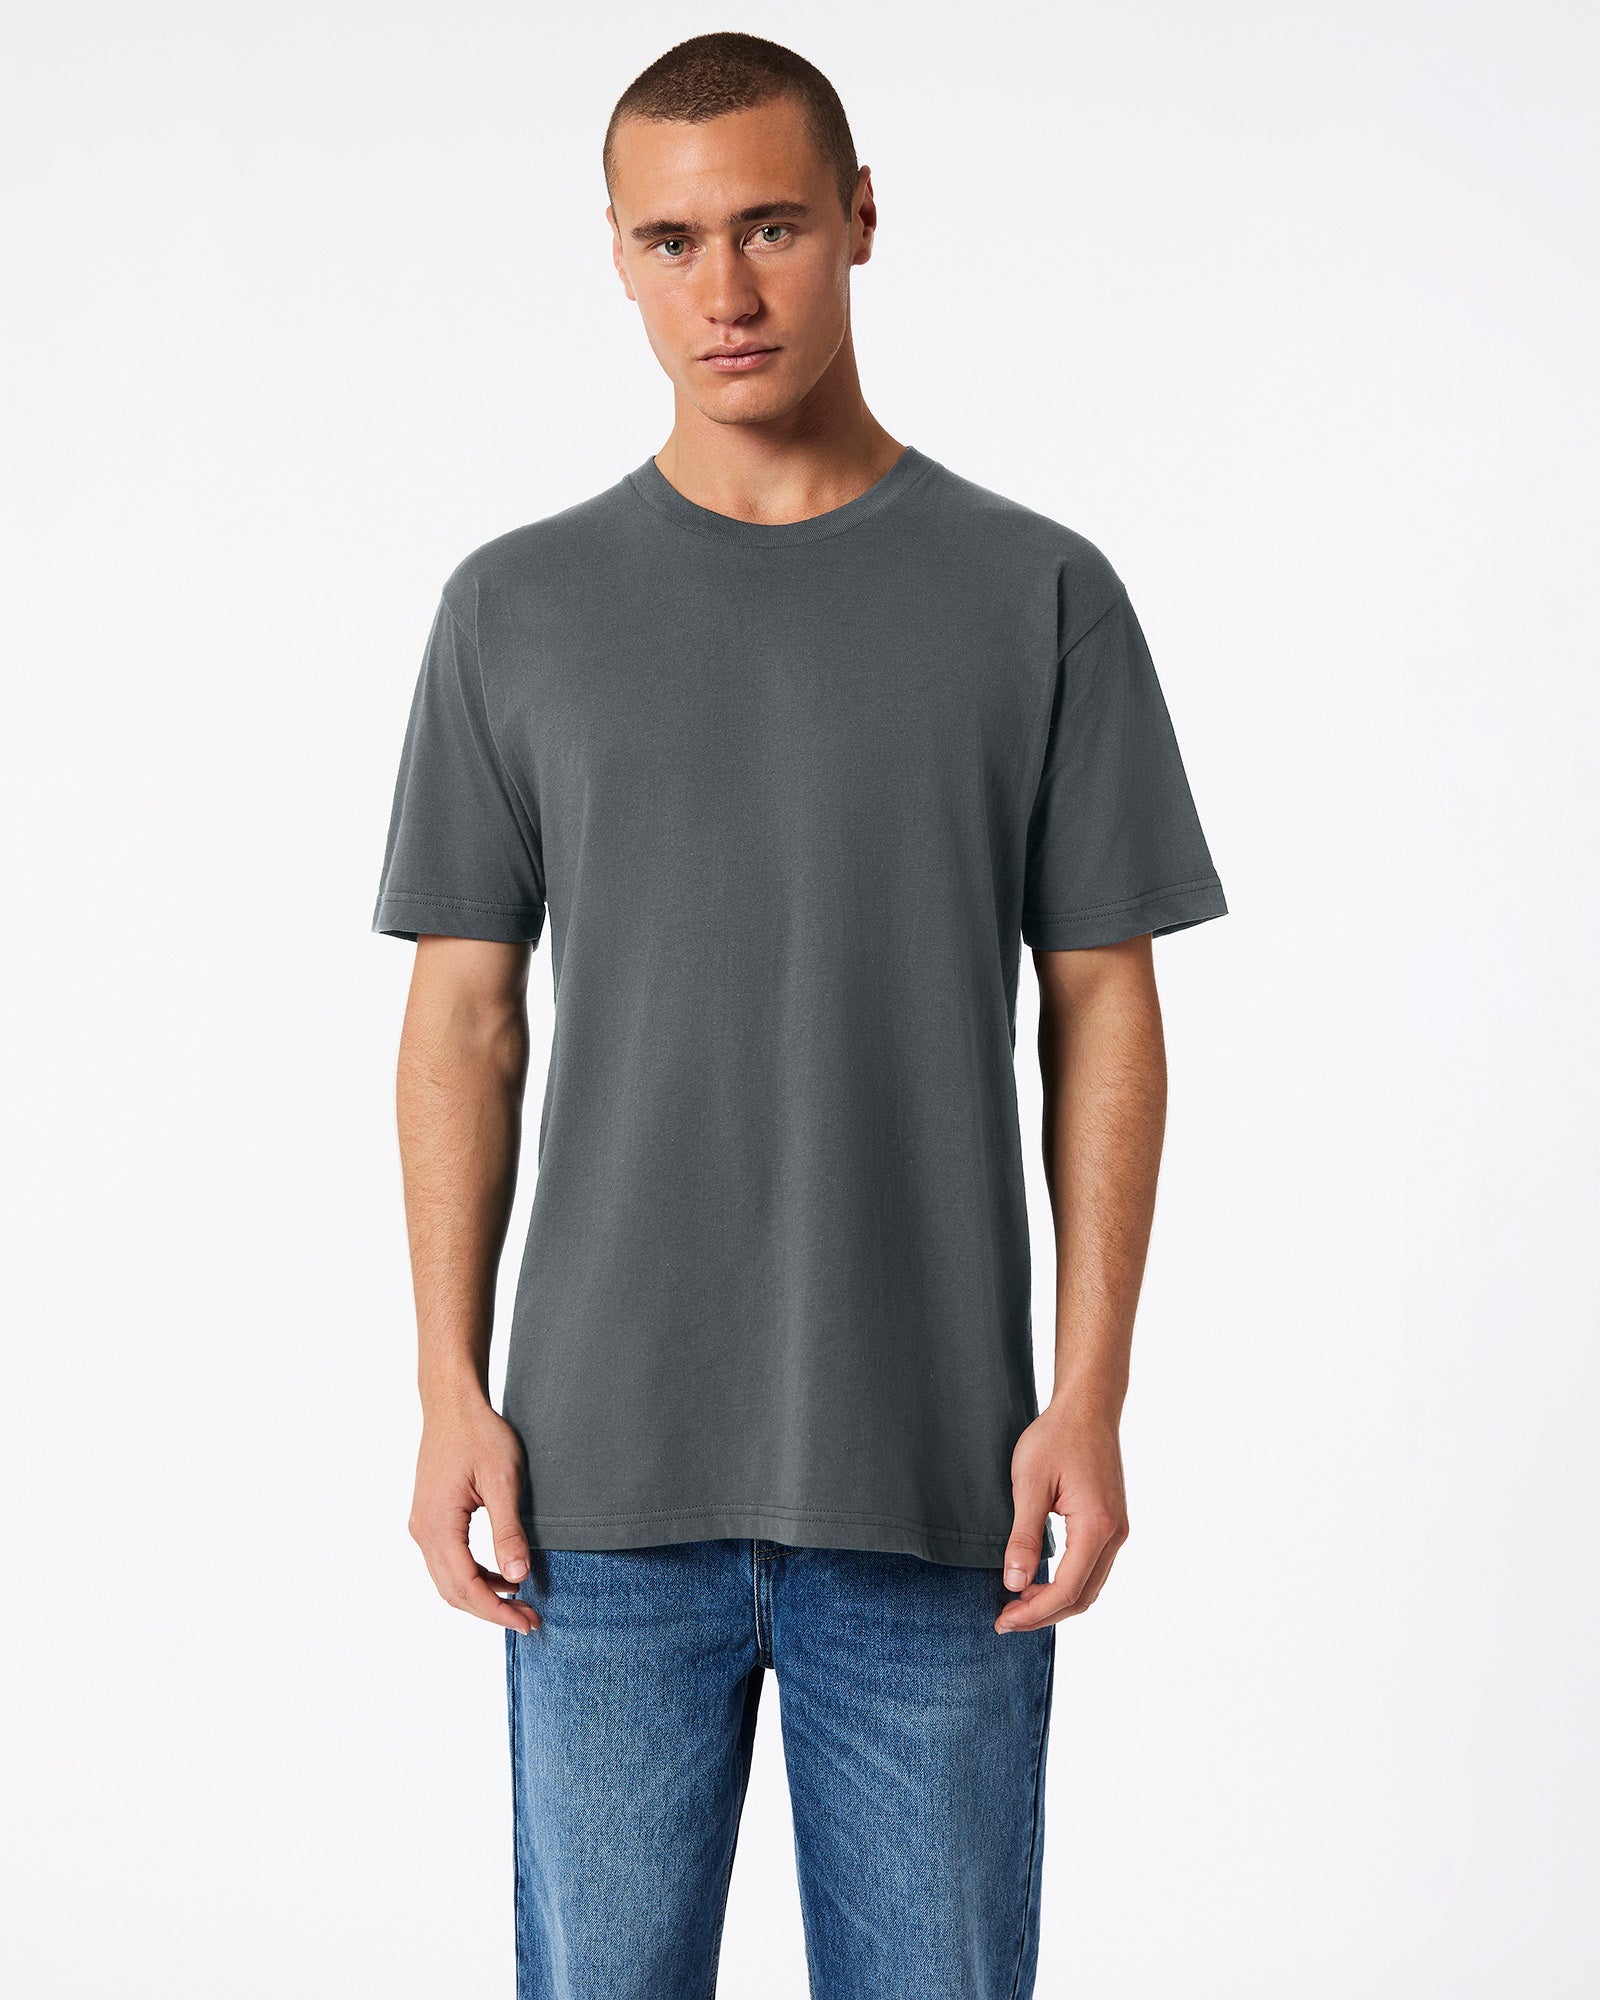 Fine Jersey Unisex Short Sleeve T-Shirt